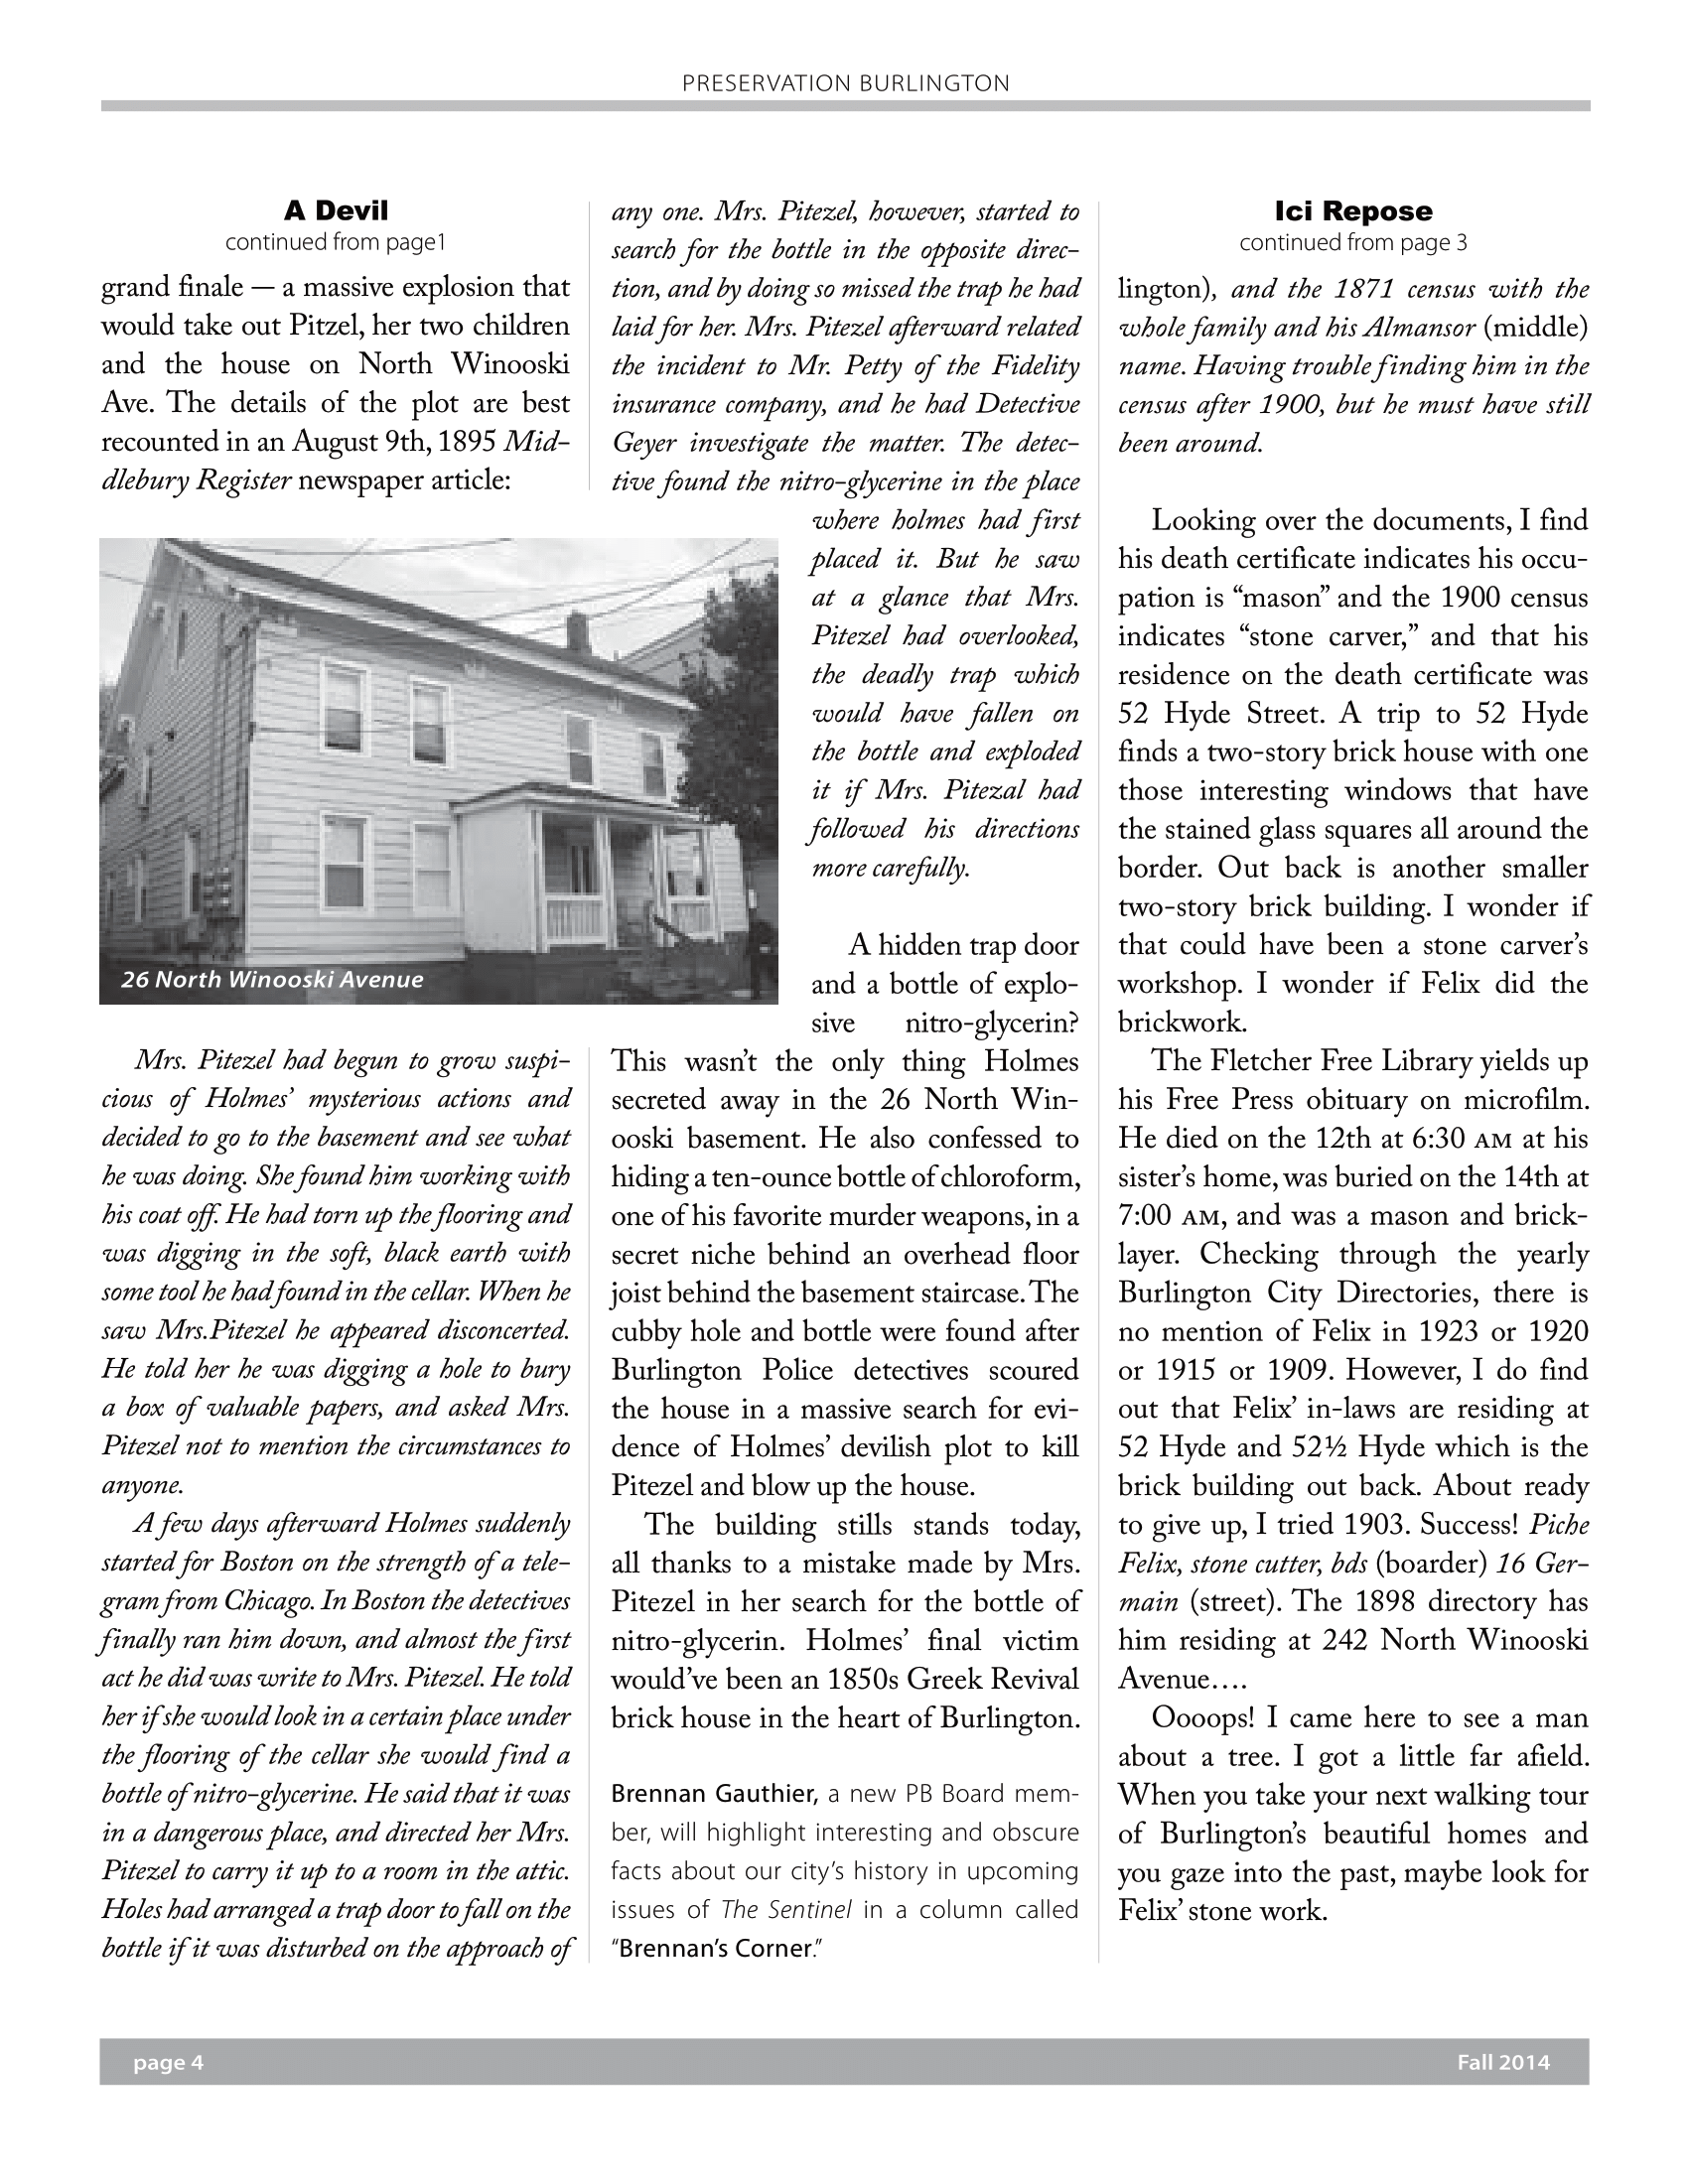 preservation-burlington-newsletter-fall-2014-4.png